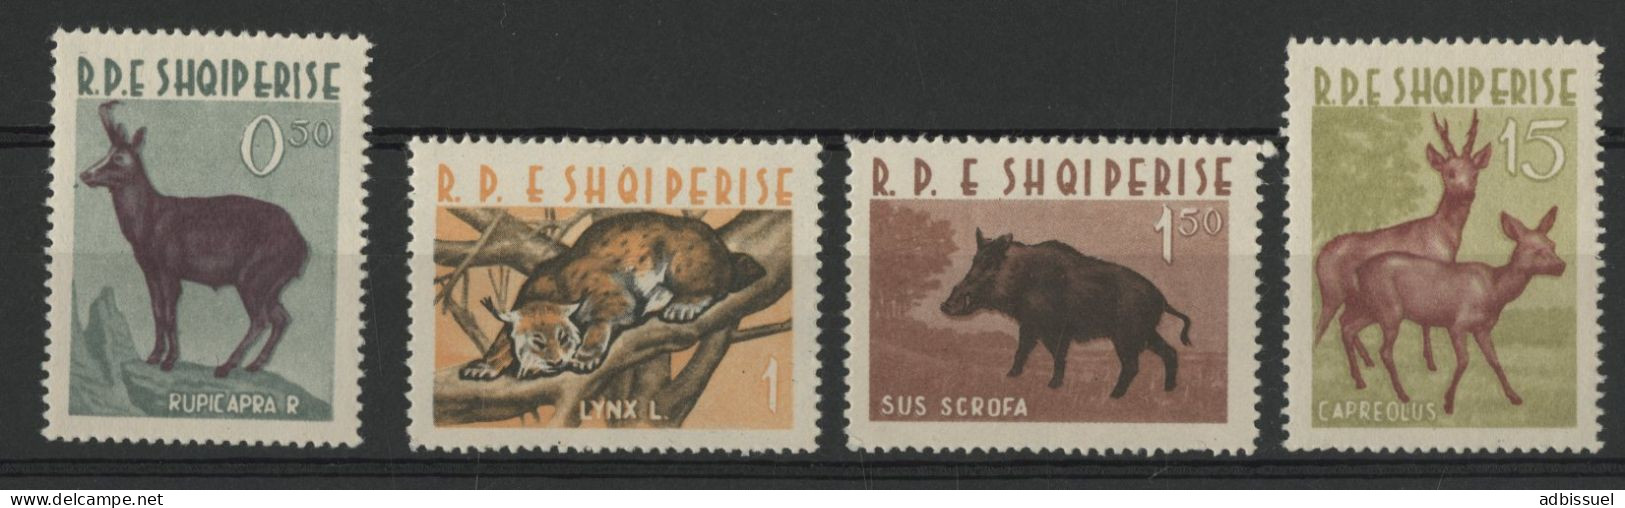 1962 ALBANIE N° 597 à 600 Cote 35 € Neufs ** (MNH) ANIMAUX ANIMALS TB Aucun Defaut. - Albania